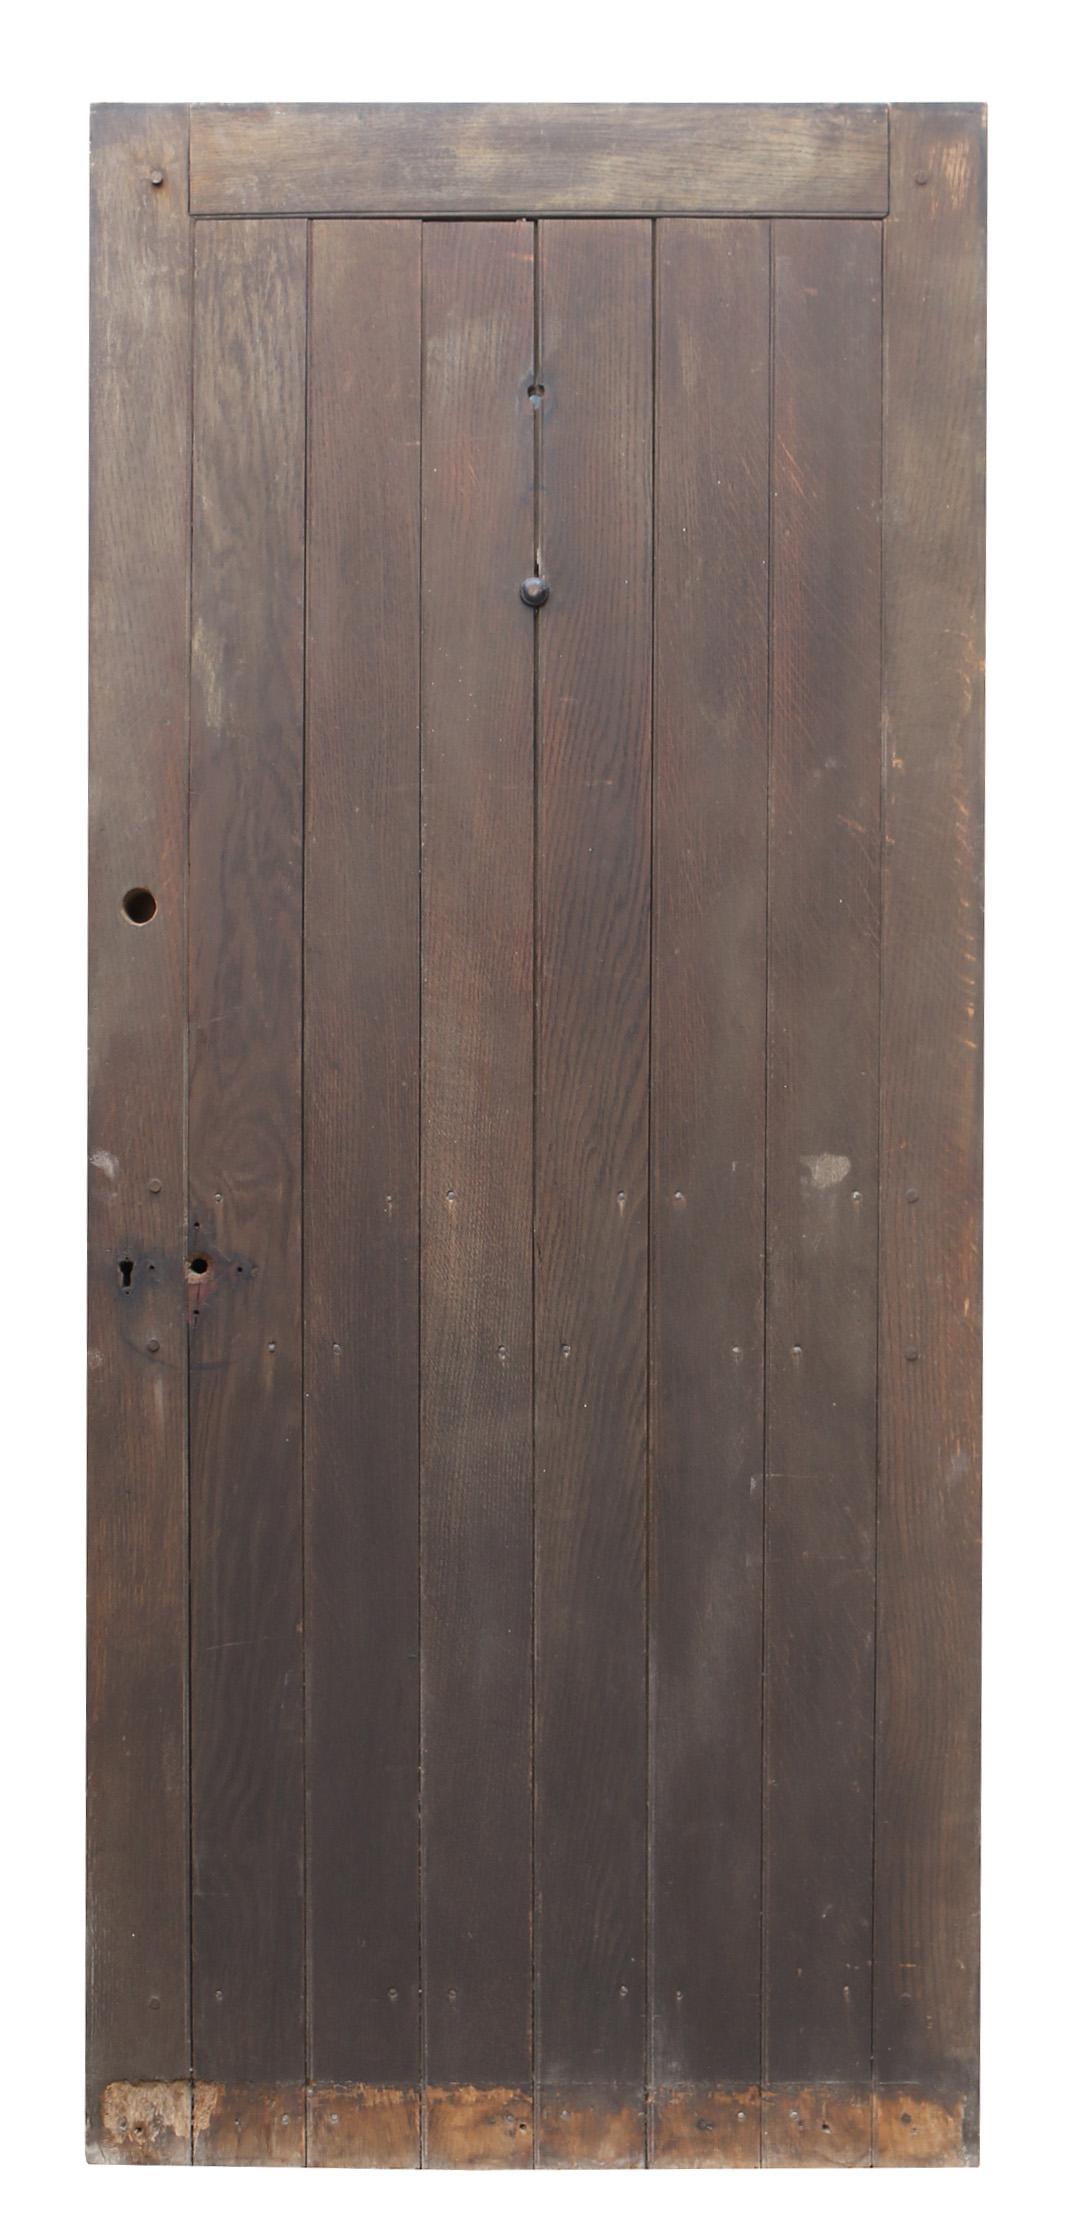 Eine aufgearbeitete Außentür mit einer Eichenbohlenfront und dem Aussehen einer zweiflügeligen Tür auf der Rückseite.